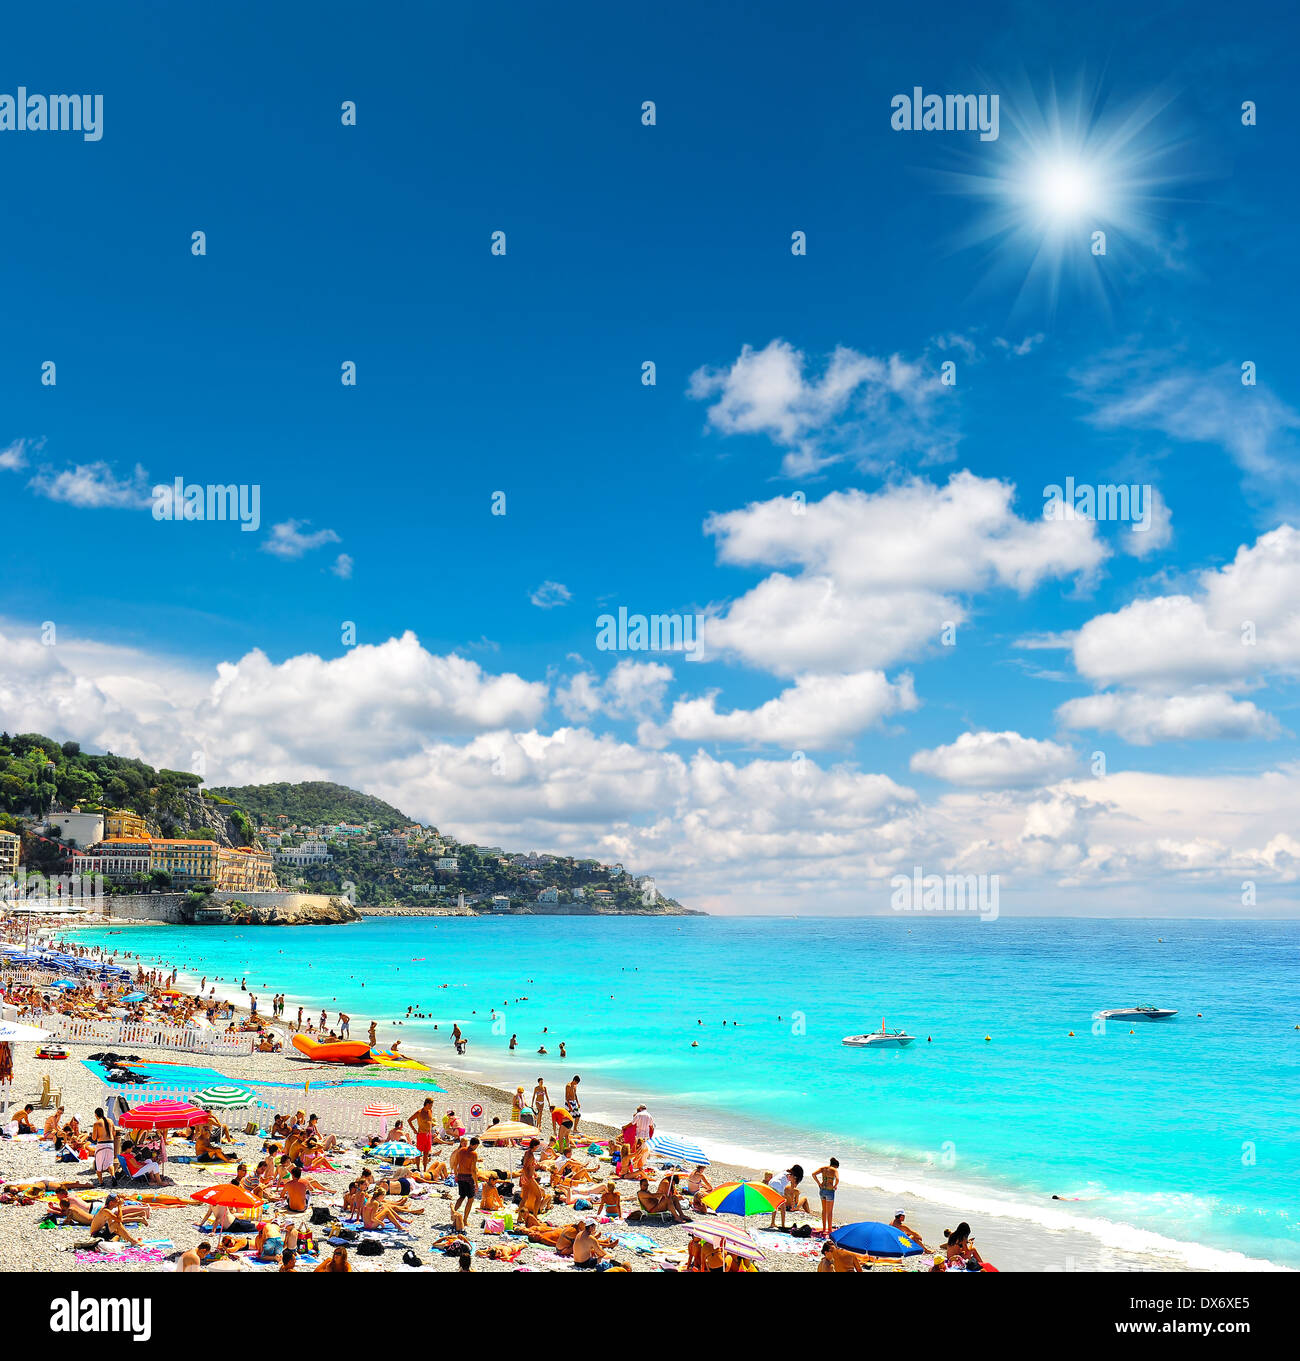 Blick auf den Strand mit Touristen, Liegestühlen und Sonnenschirmen an heißen Sommertagen. Reisen-Hintergrund Stockfoto